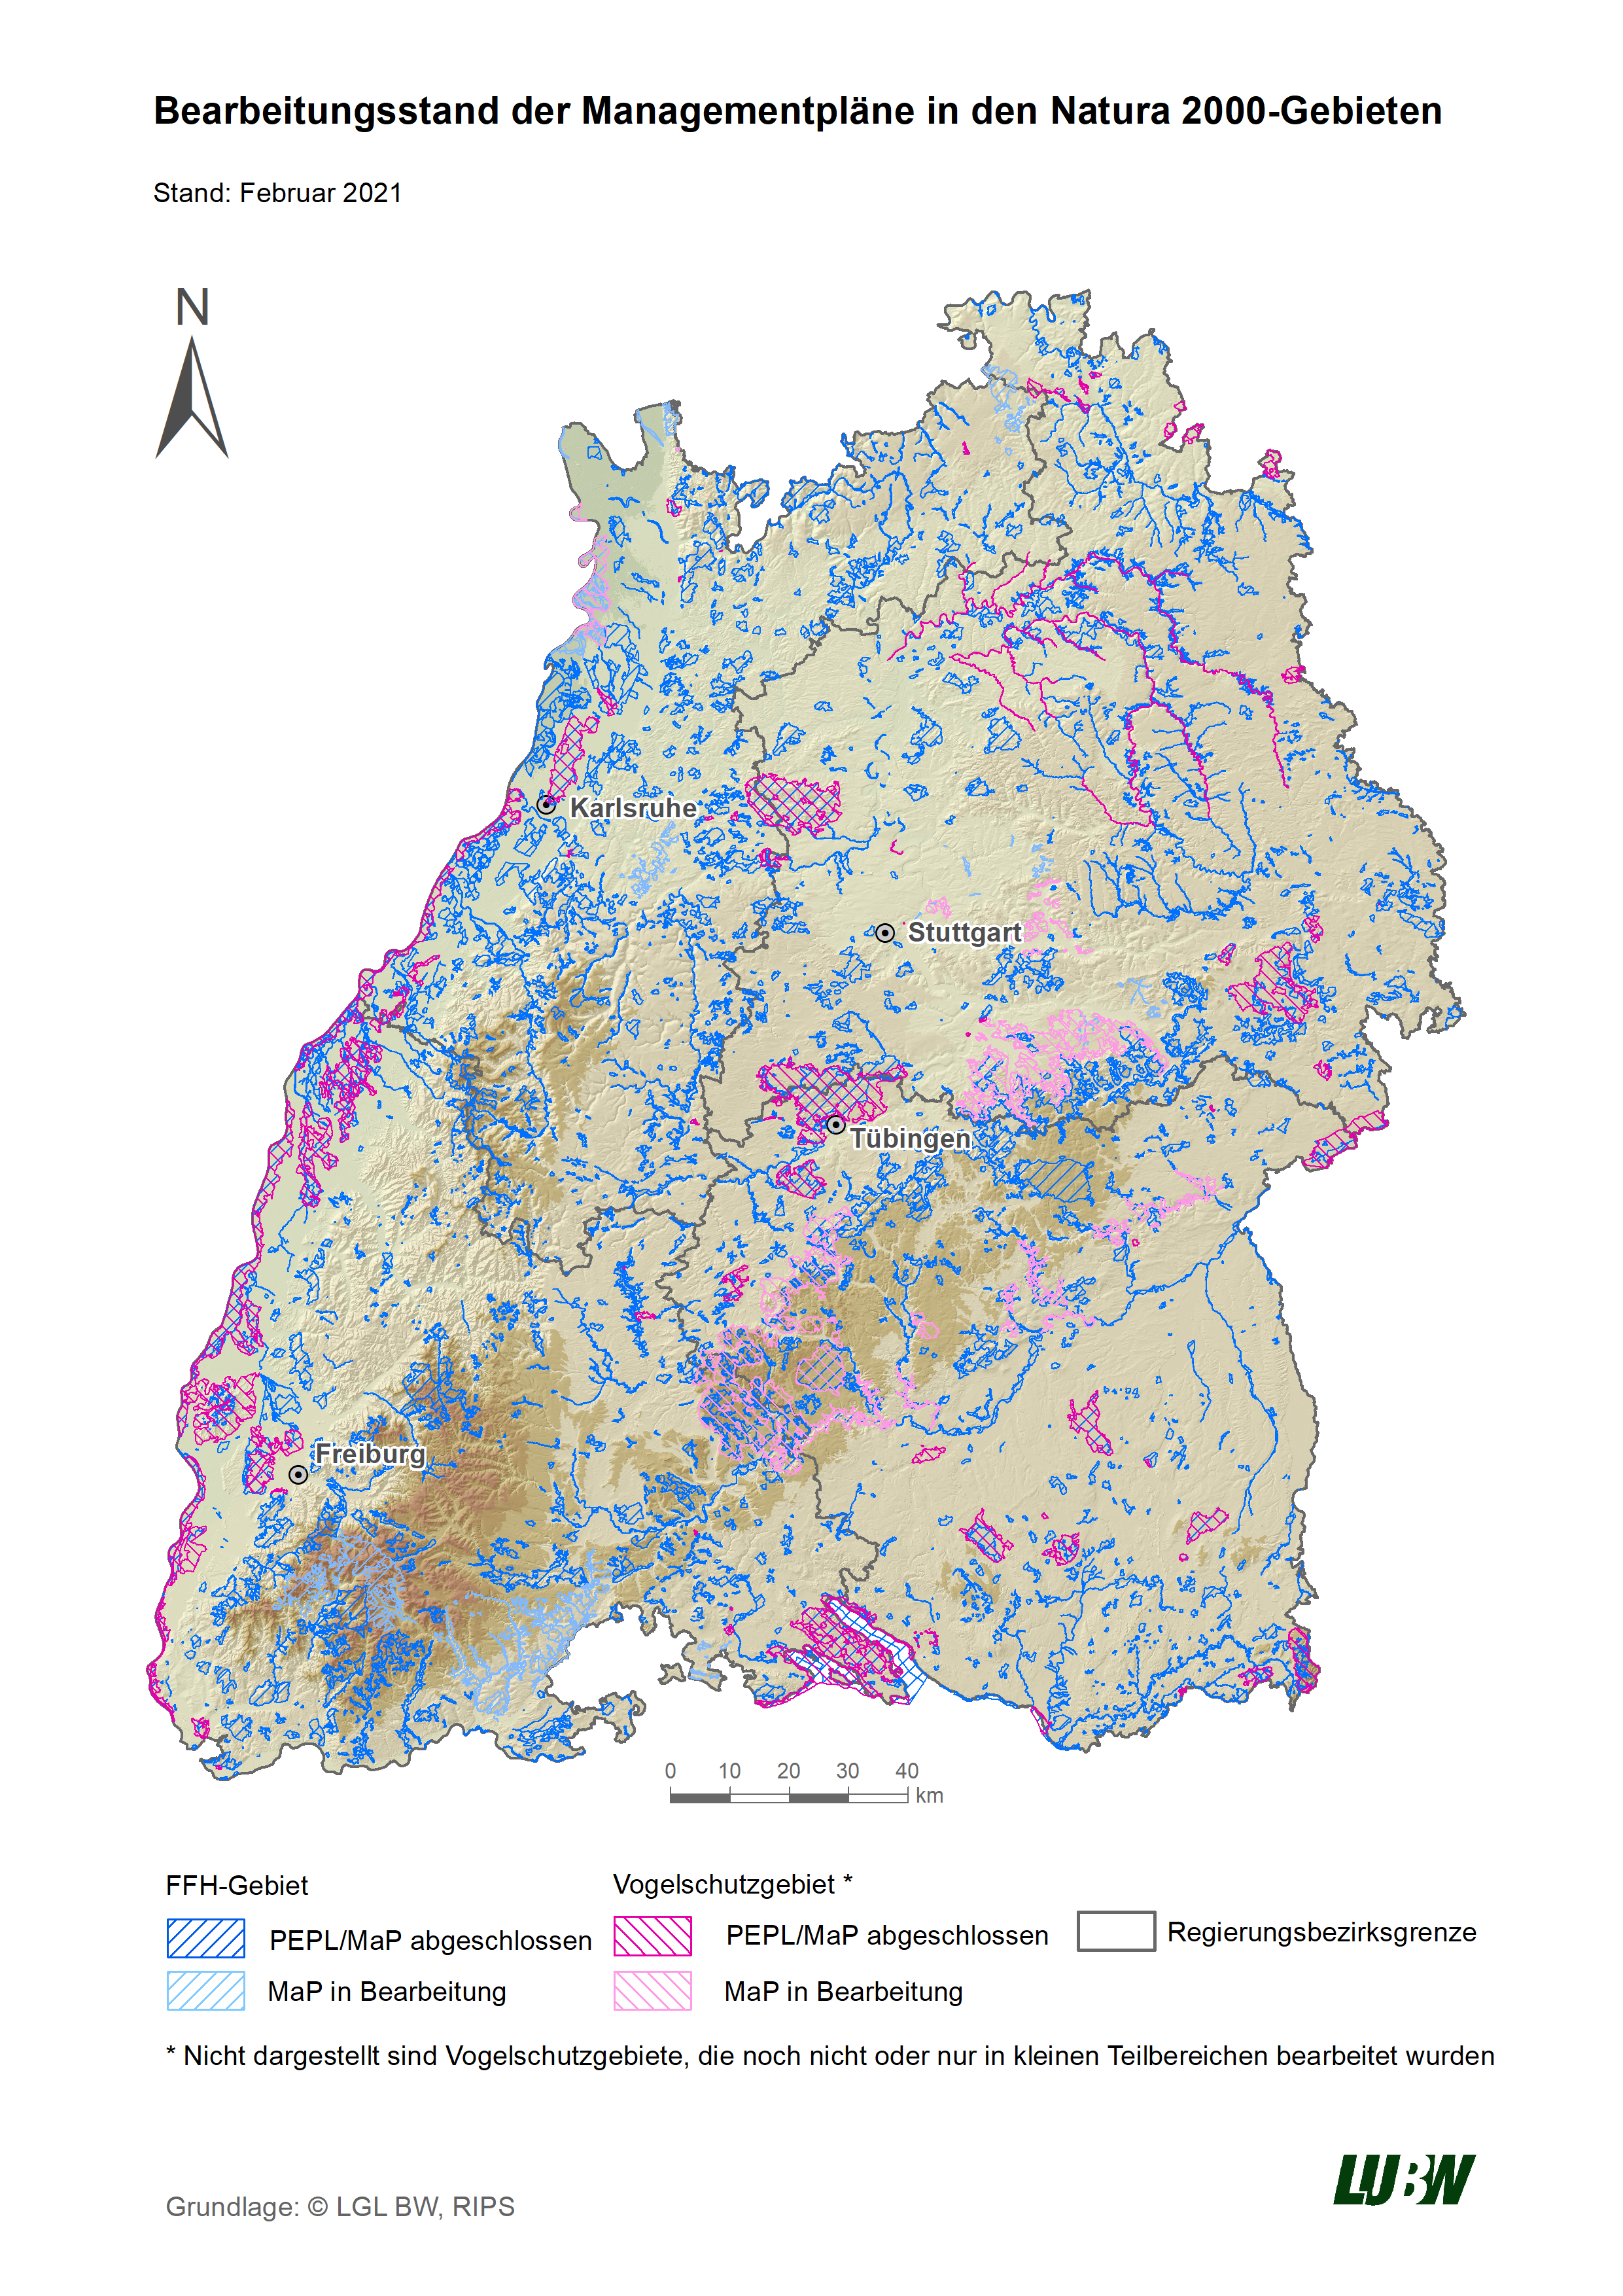 Übersichtskarte der FFH- und Vogelschutzgebiete in Baden-Württemberg mit Kennzeichnung ihres jeweiligen MaP-Bearbeitungsstandes, Stand Februar 2021